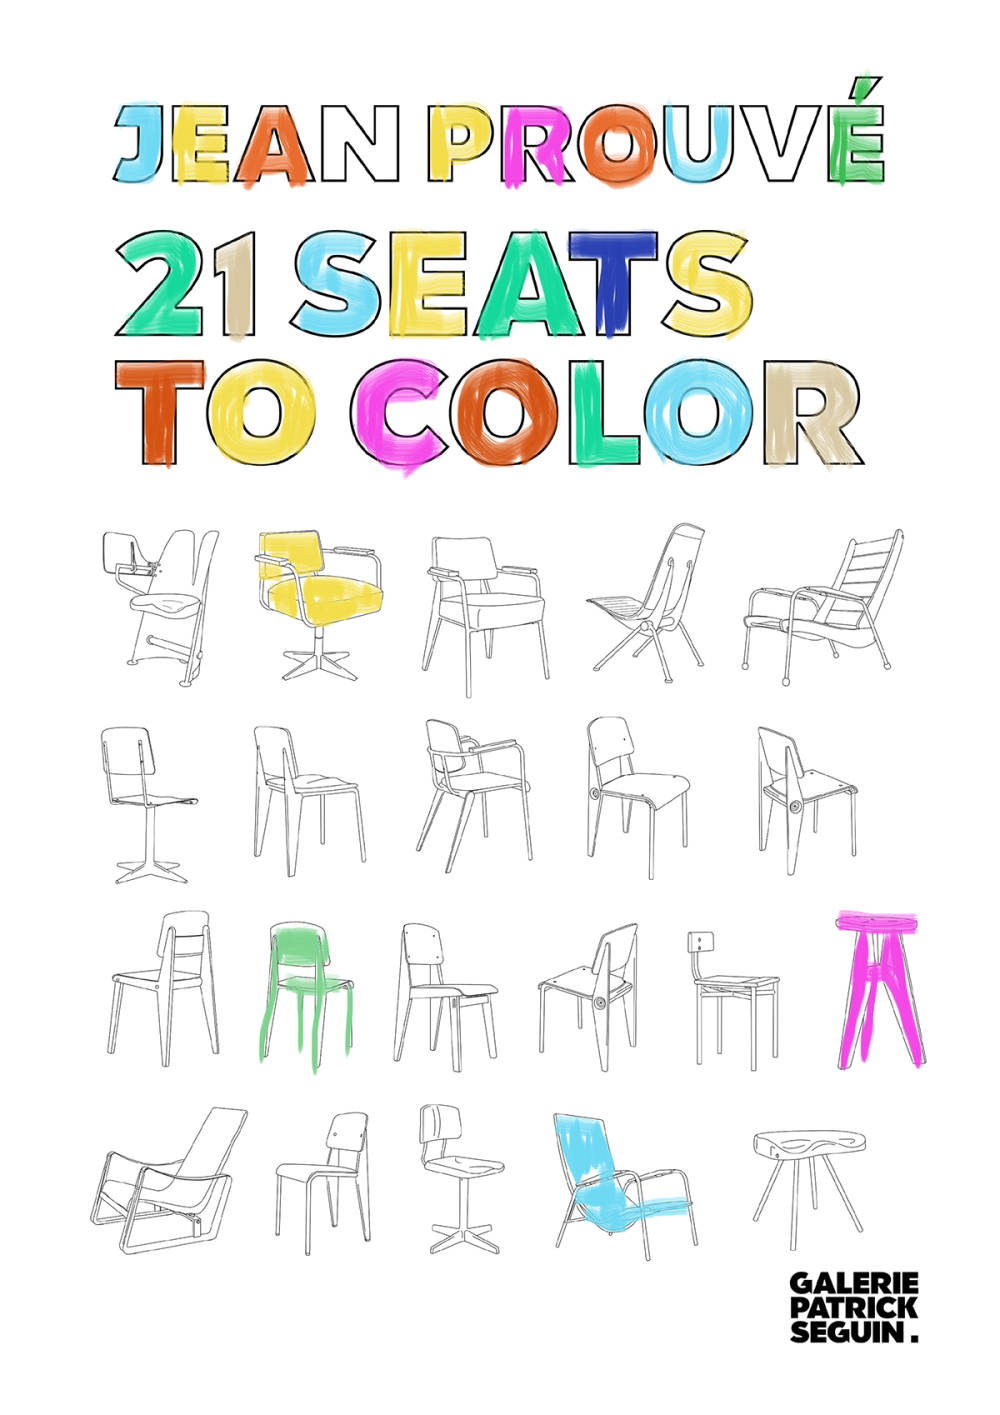  Galerie Patrick Seguin, Jean Prouvé 21 Seats to Color  